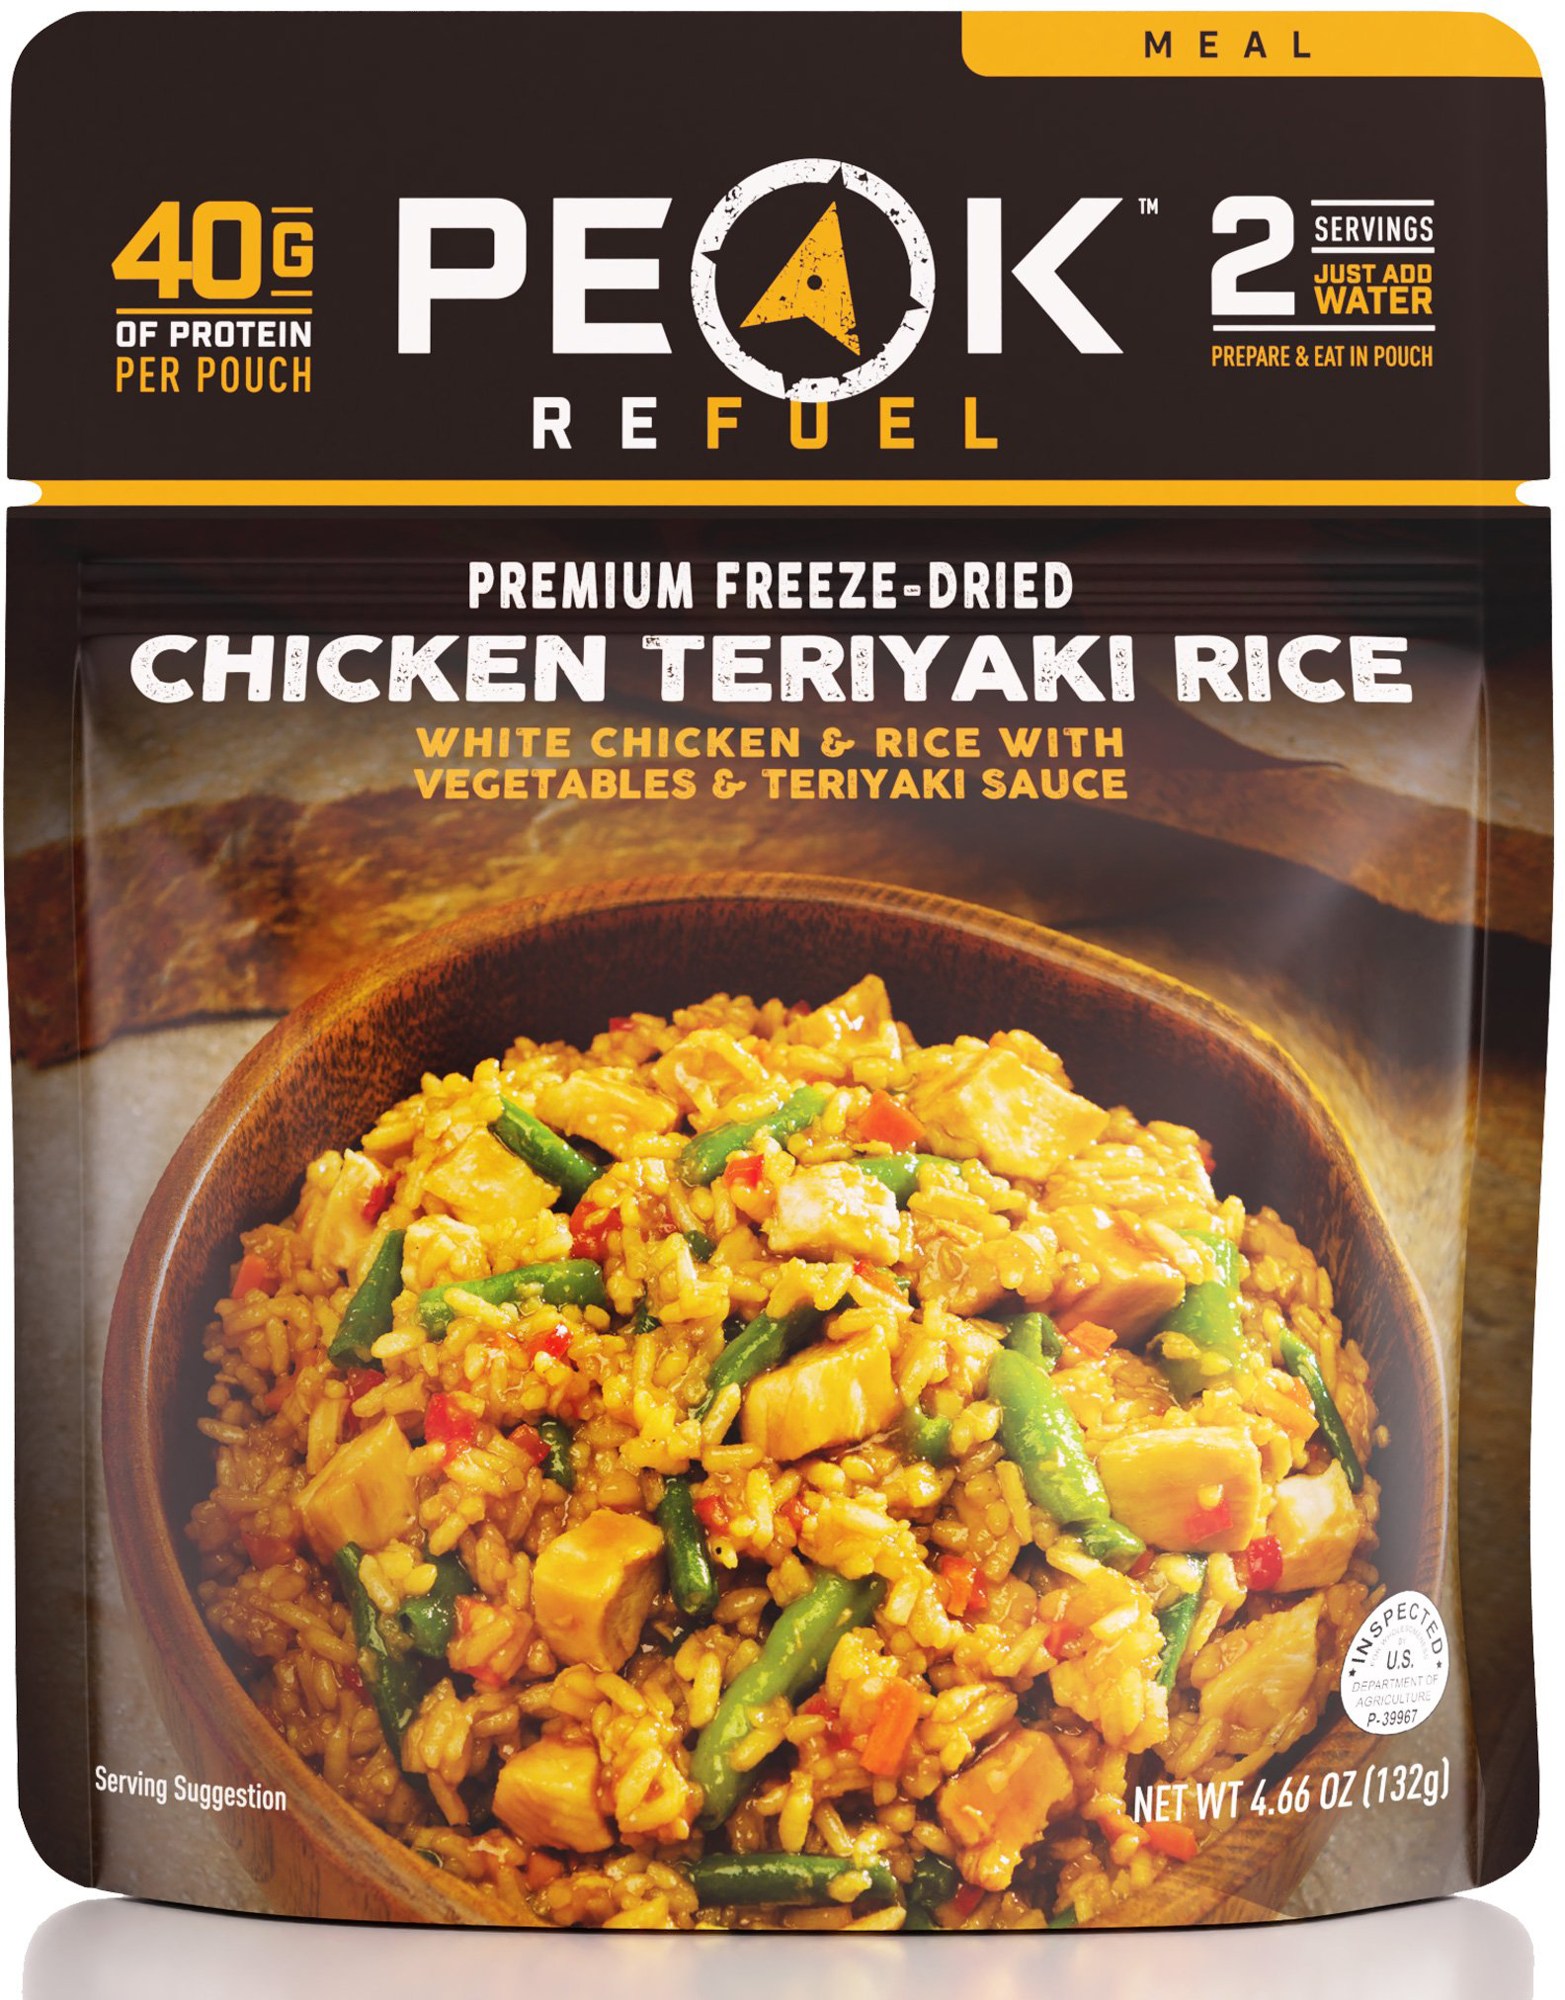 Курица с рисом Терияки – 2 порции PEAK REFUEL поке с курицей и соусом терияки деликатеска 230г